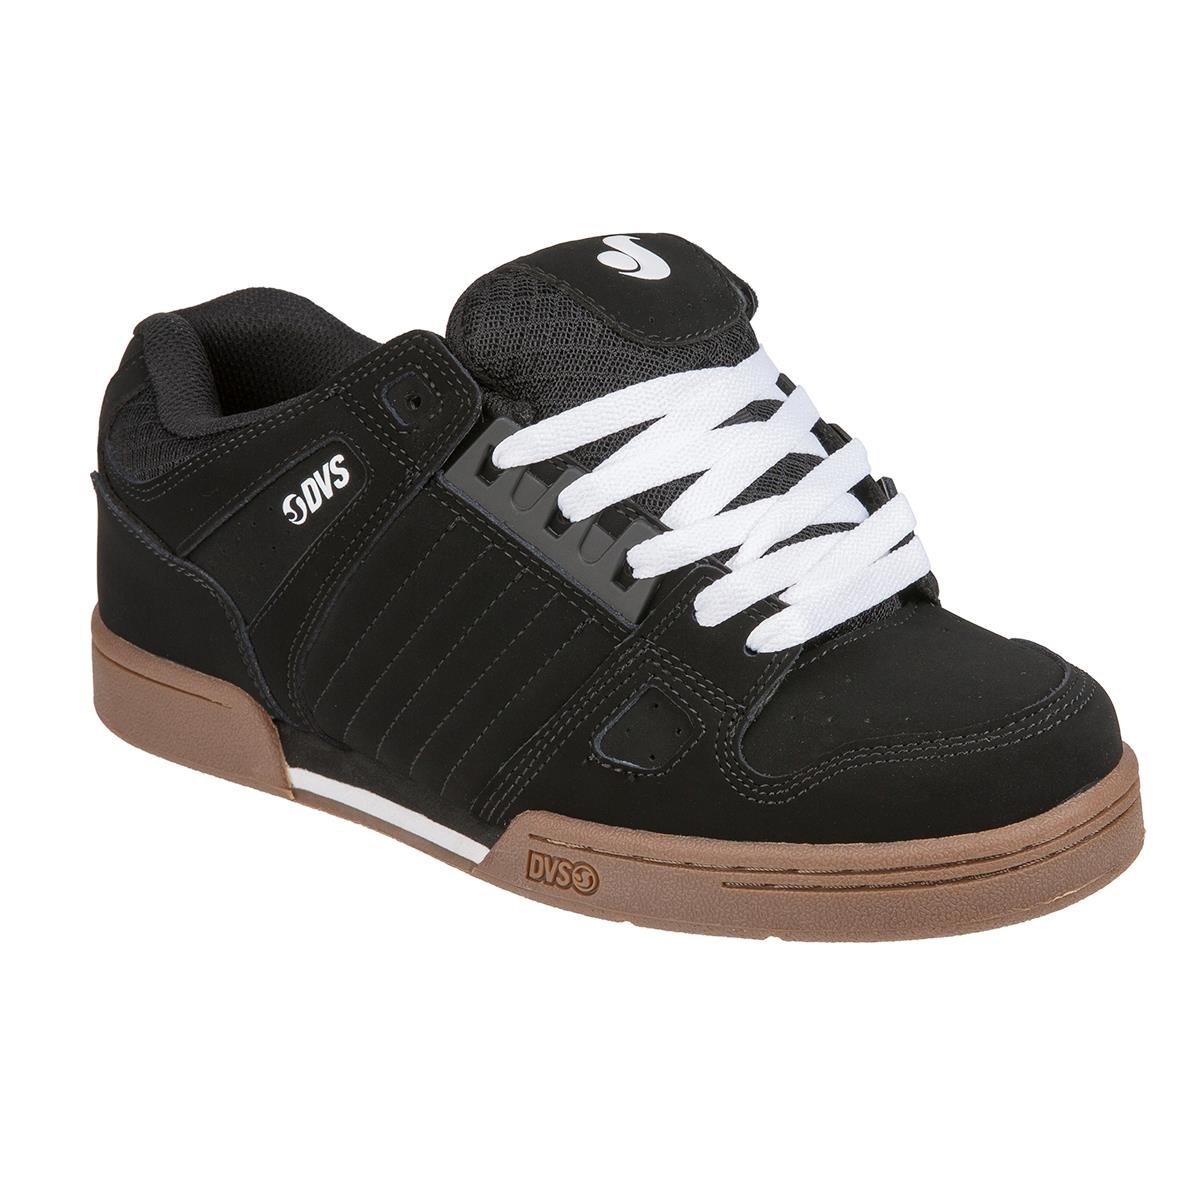 DVS Chaussures Celsius Anderson - Noir/Blanc Gum/Nubuck